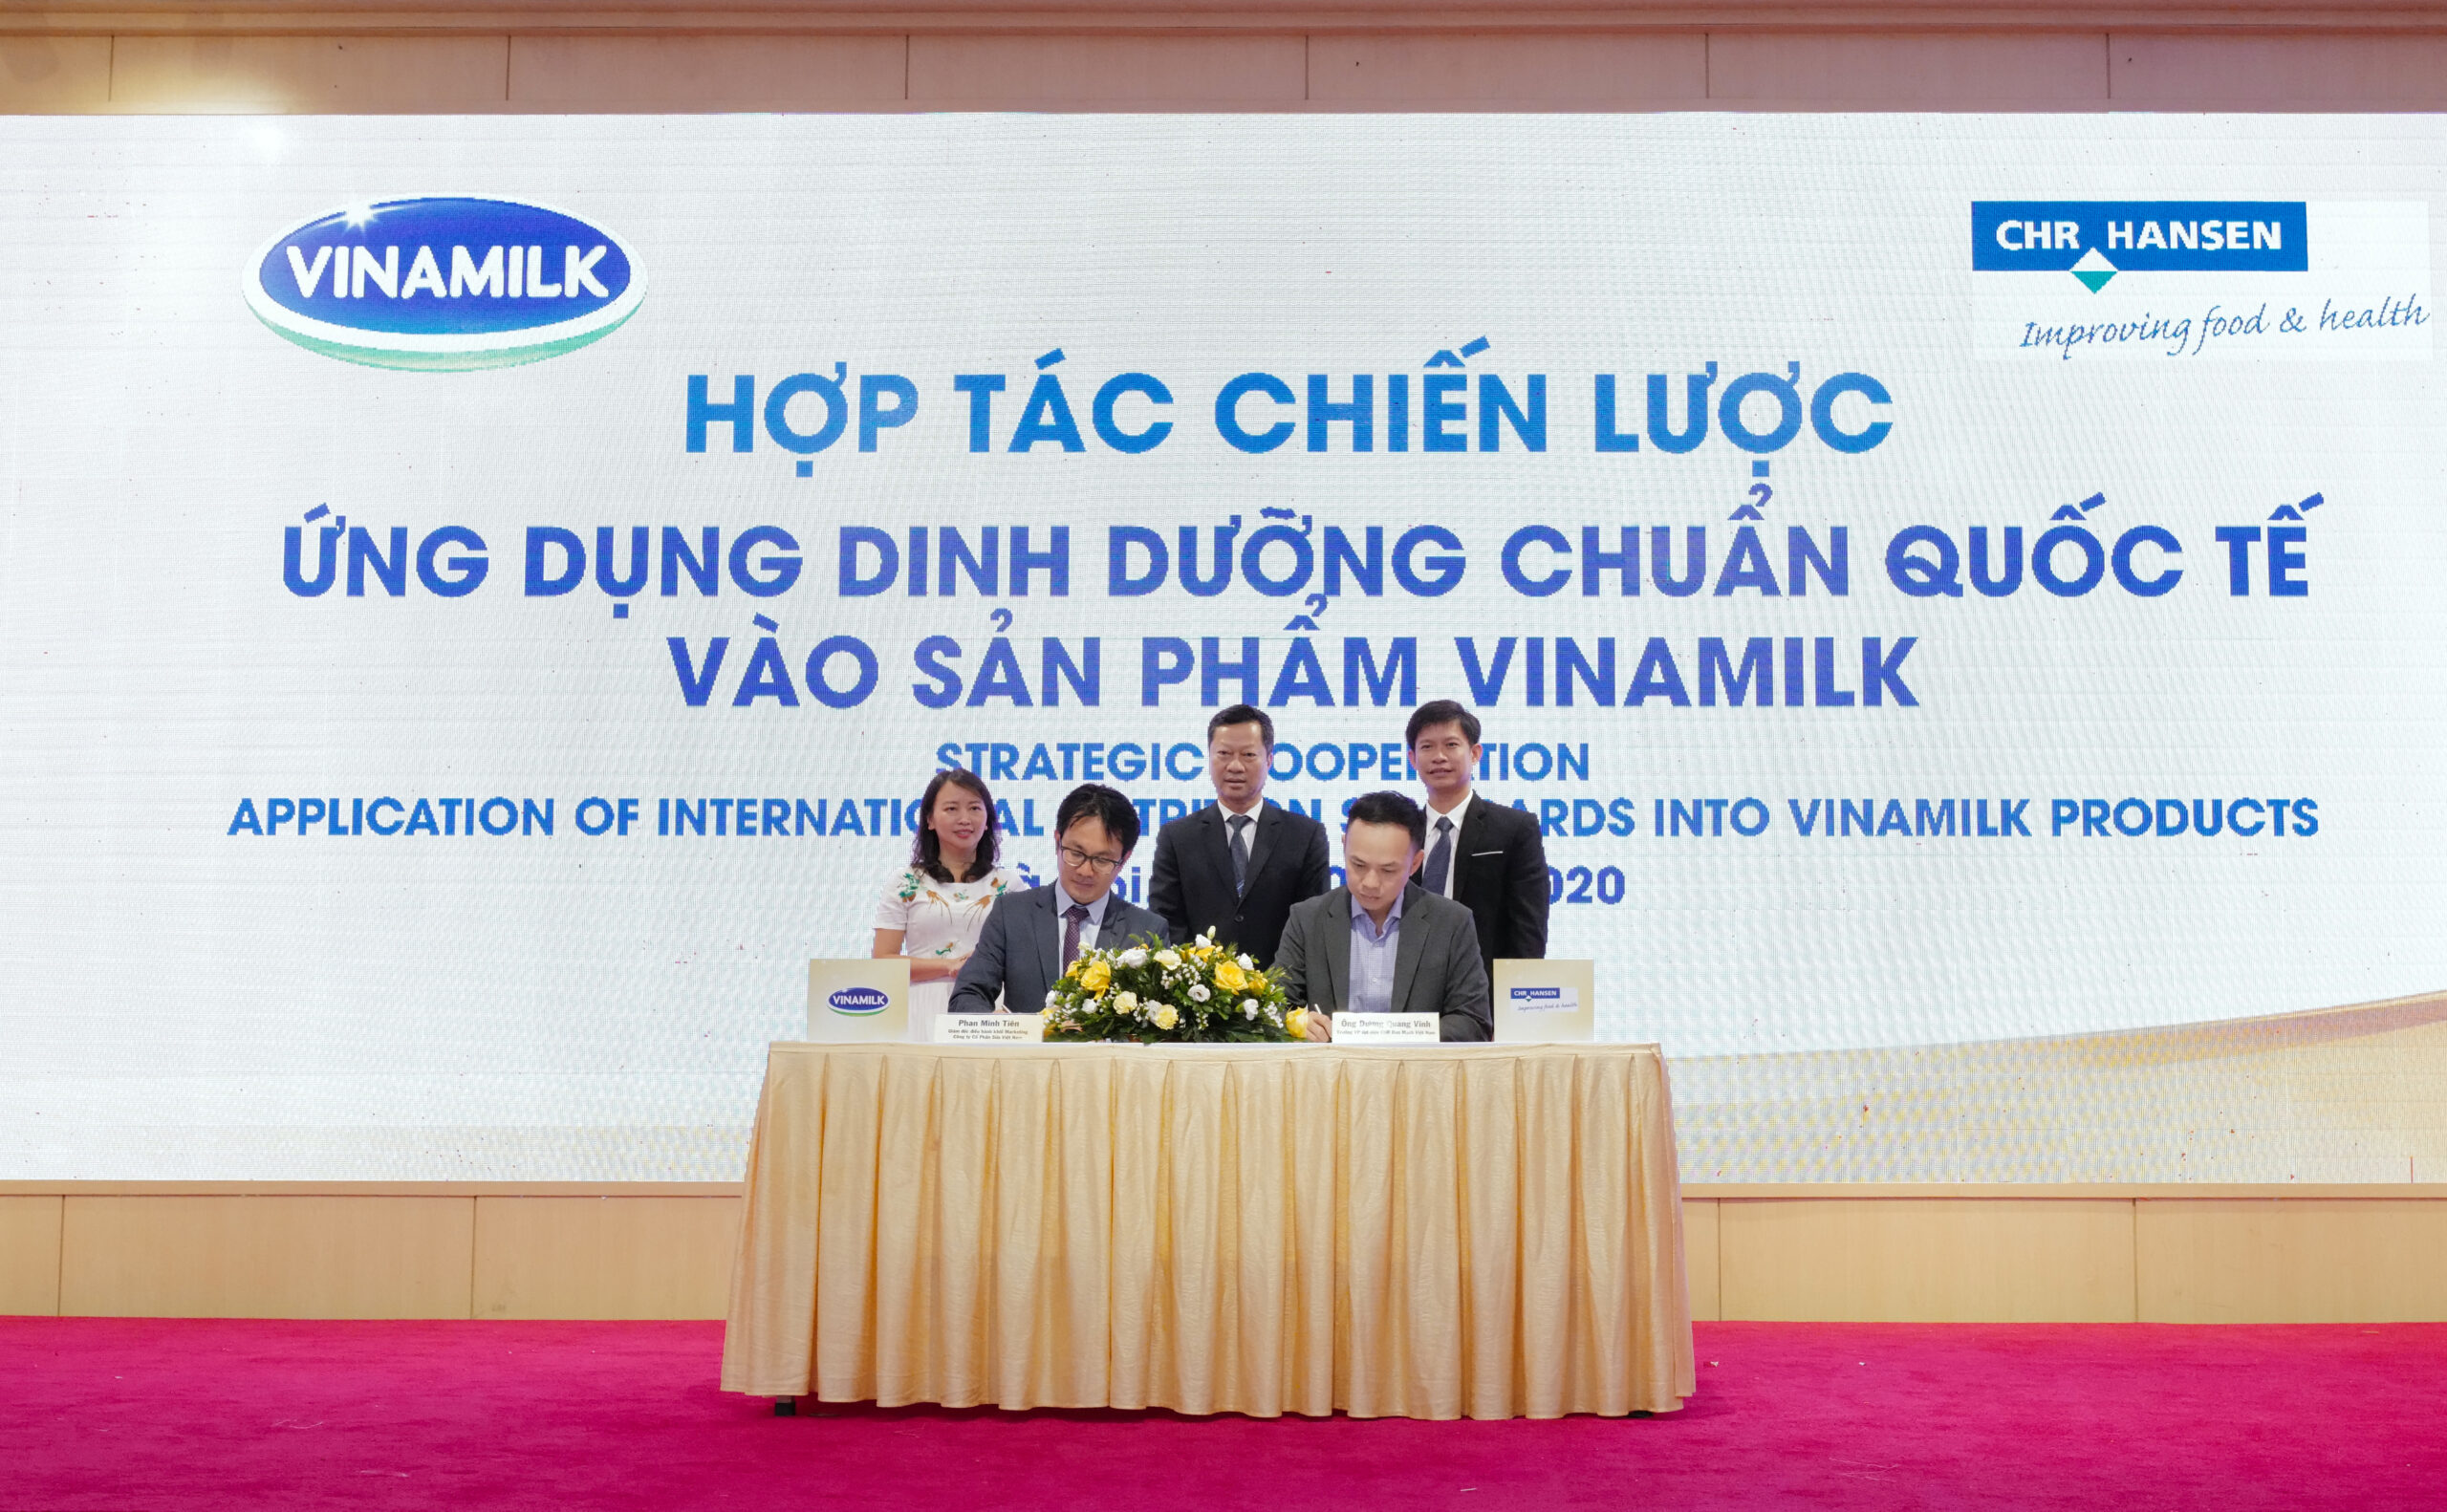 Ông Phan Minh Tiên và ông Dương Quang Vinh, Trưởng đại diện của tập đoàn CHR Hansen tại Việt Nam thực hiện ký kết hợp tác chiến lược tại sự kiện.